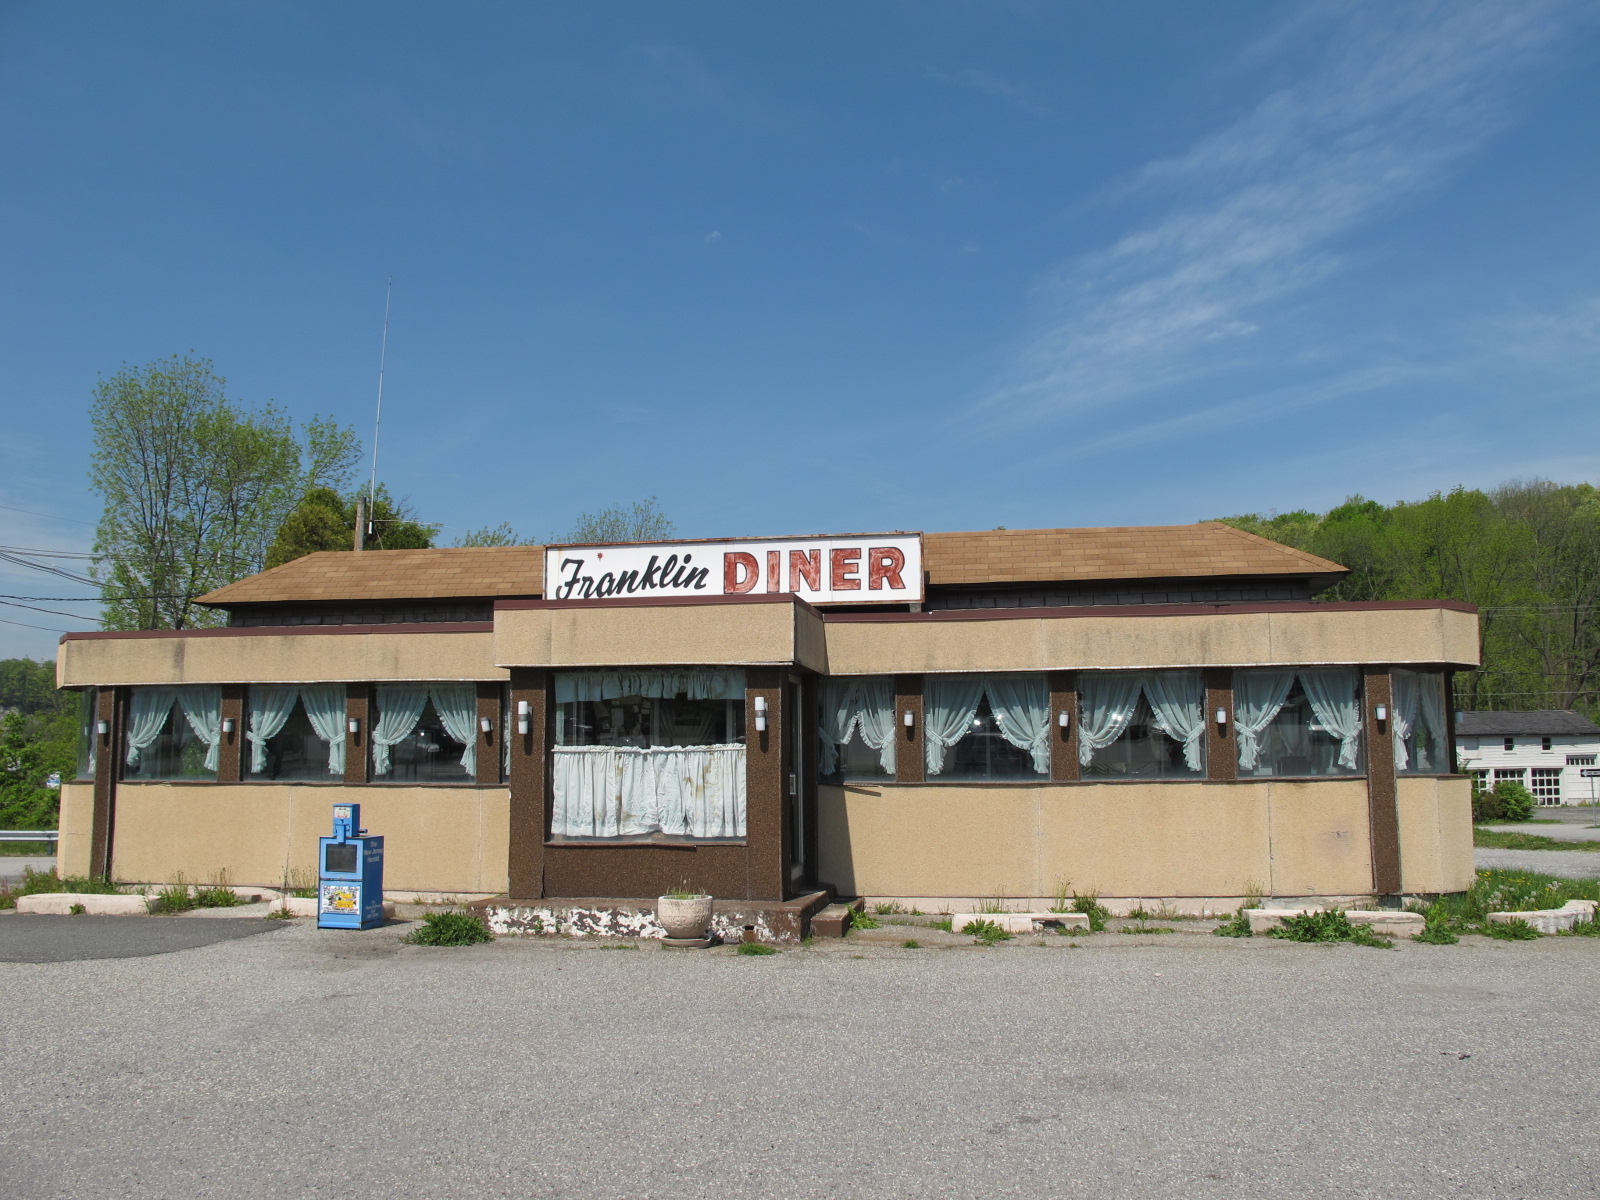 The Franklin Diner